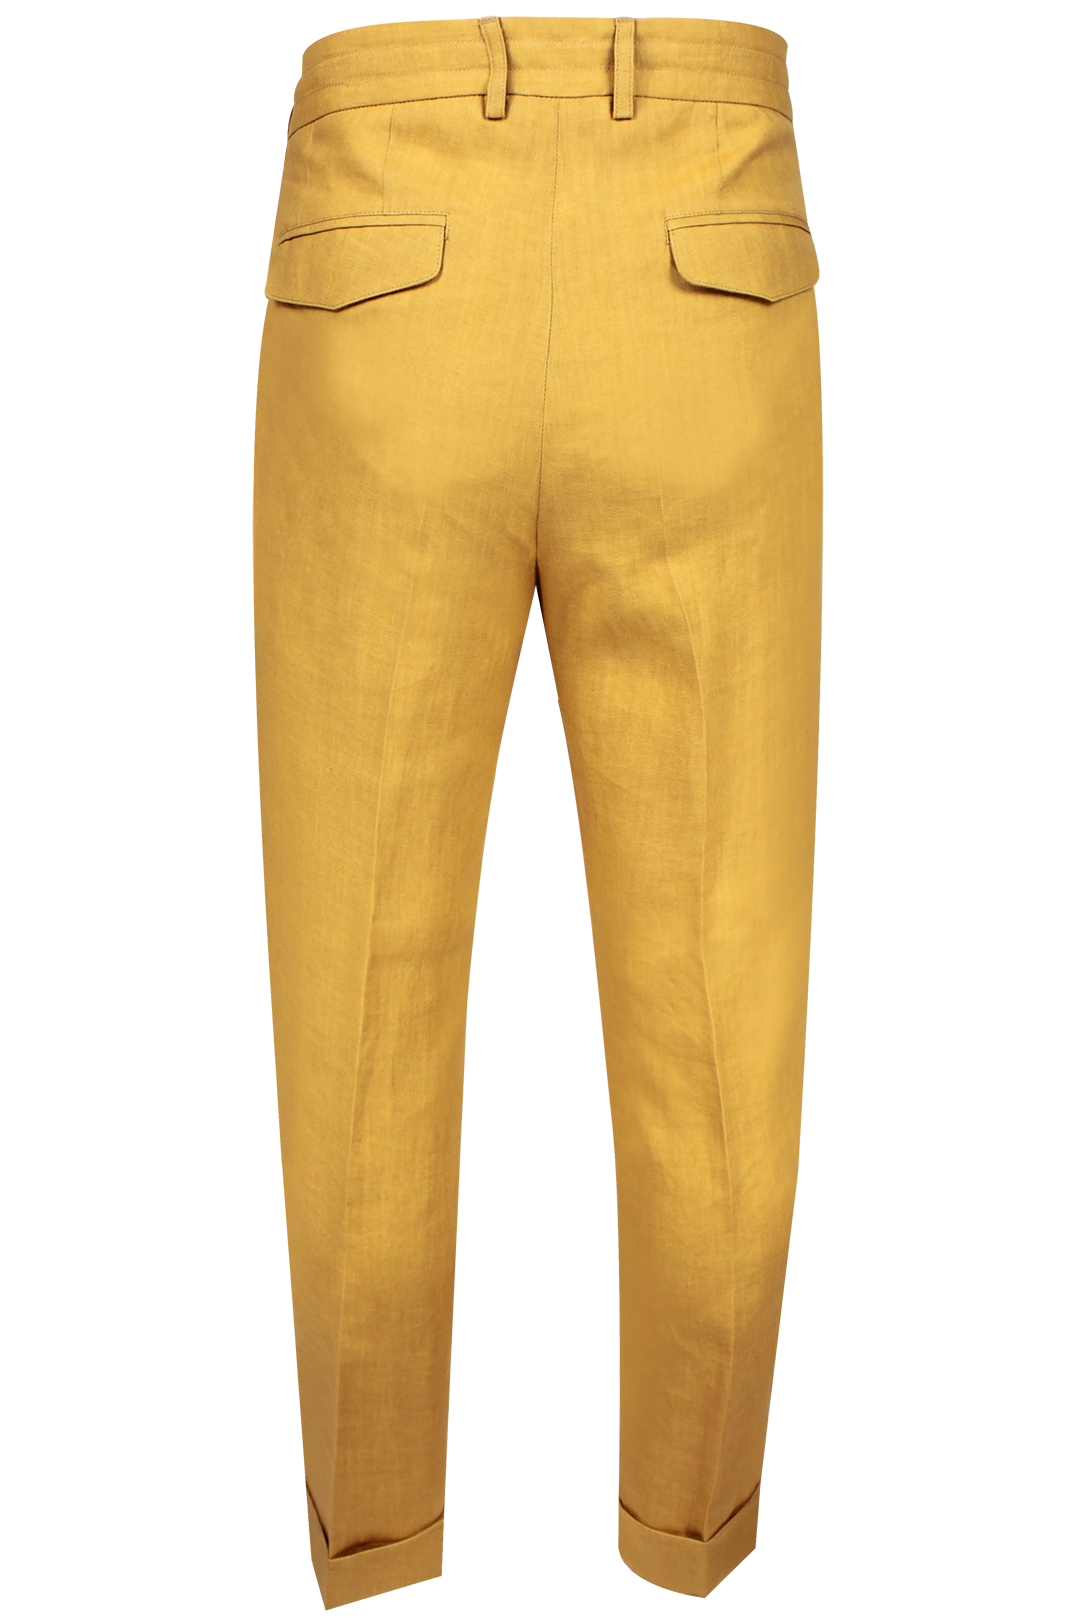 Pantalone con due pince e coulisse in lino senape retro